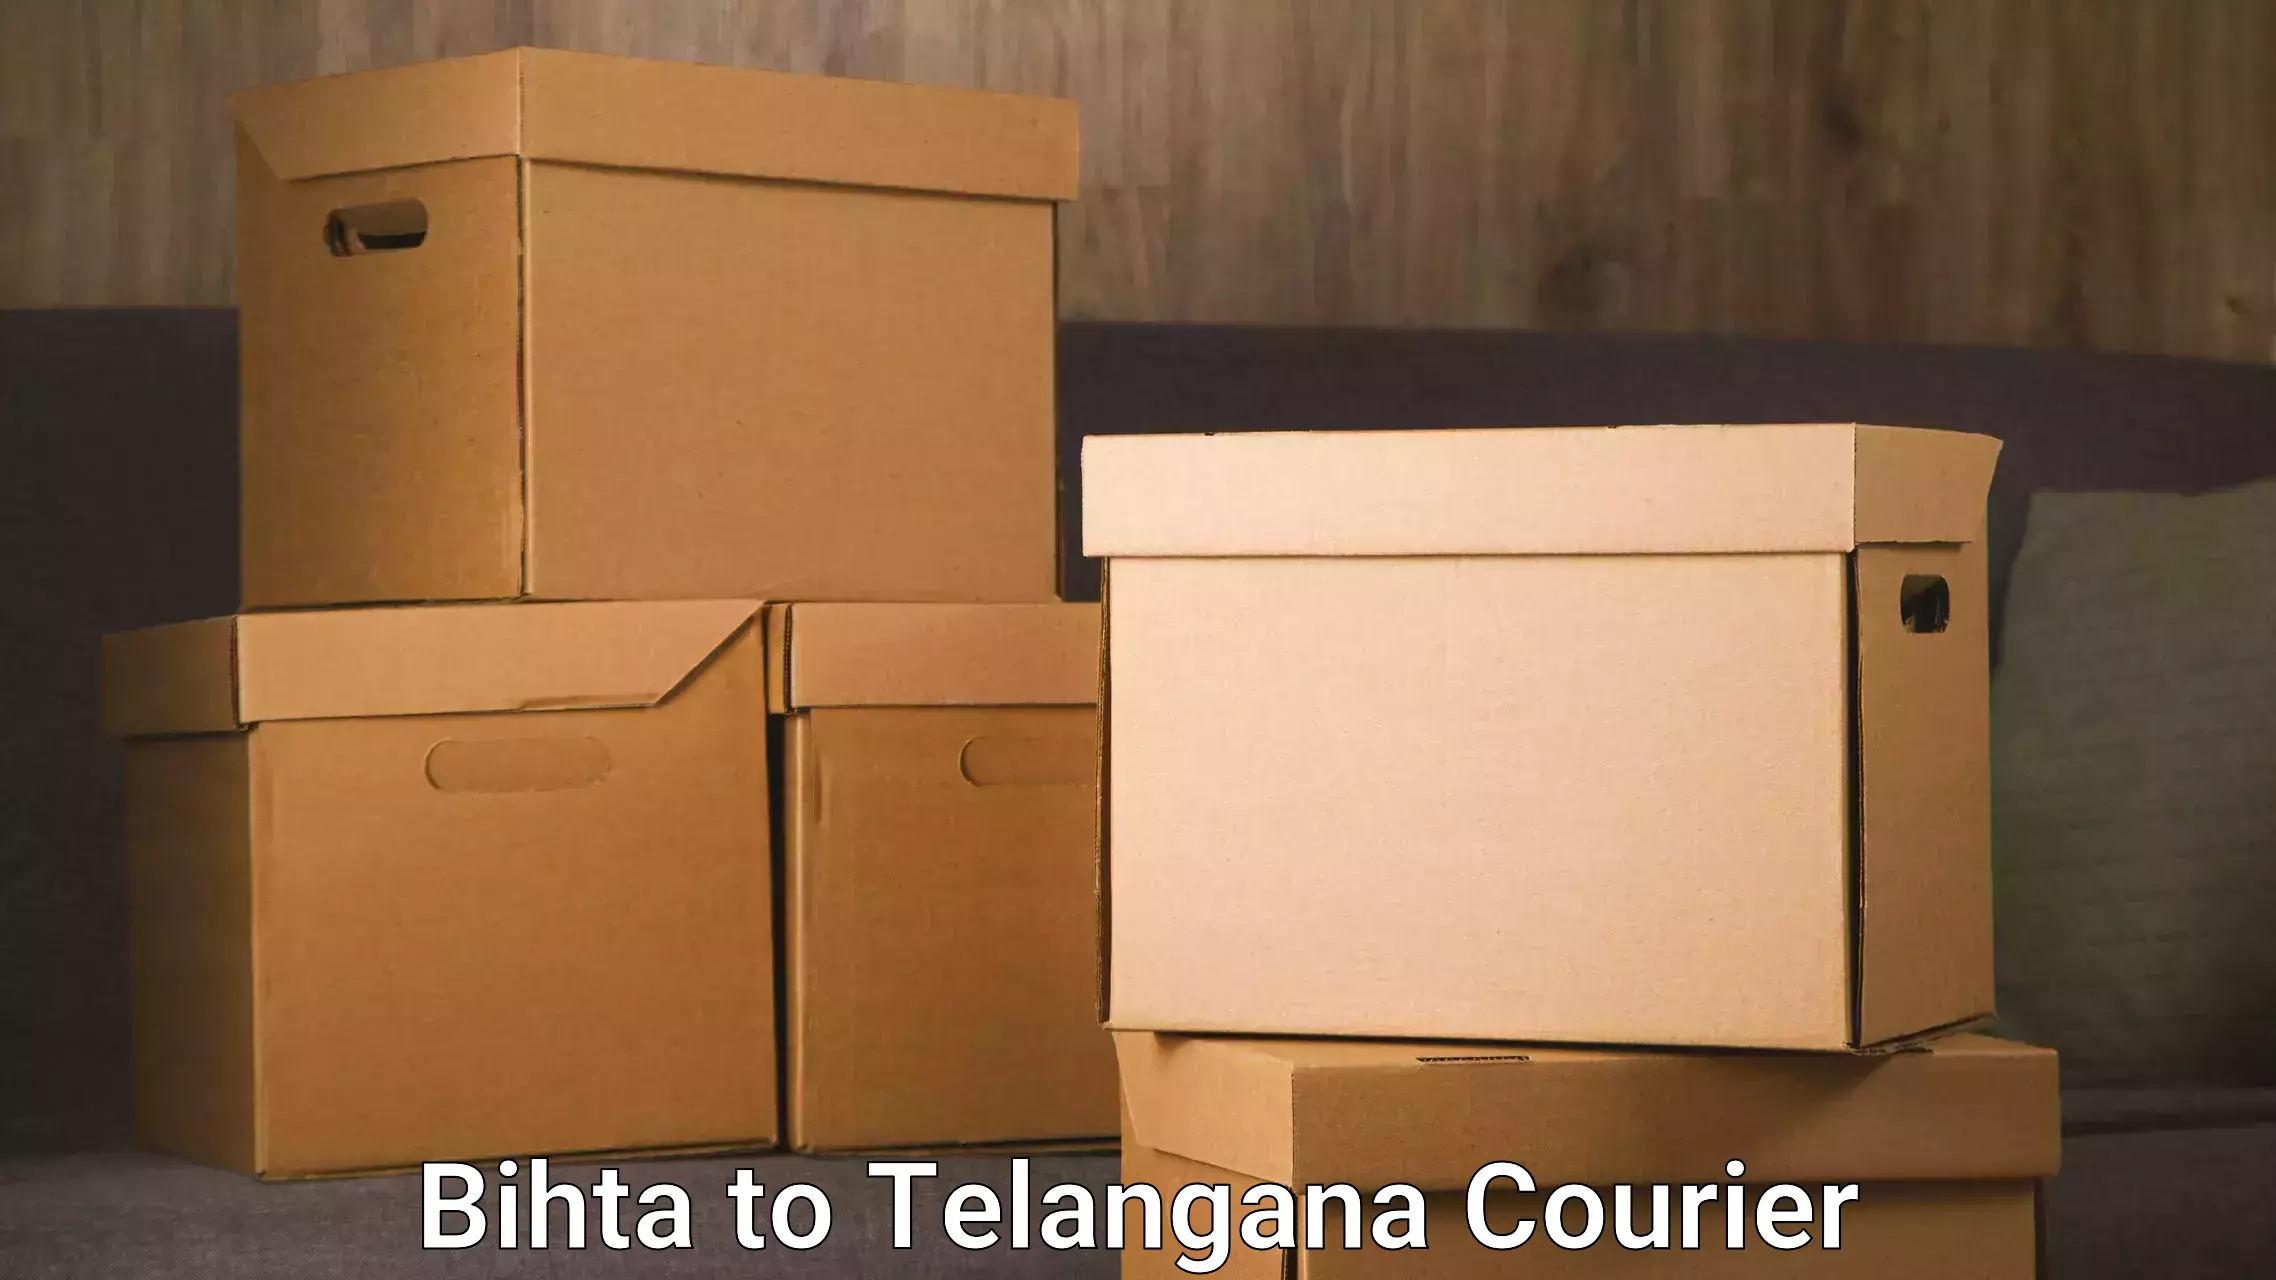 Furniture moving assistance in Bihta to Dharmapuri Jagtial